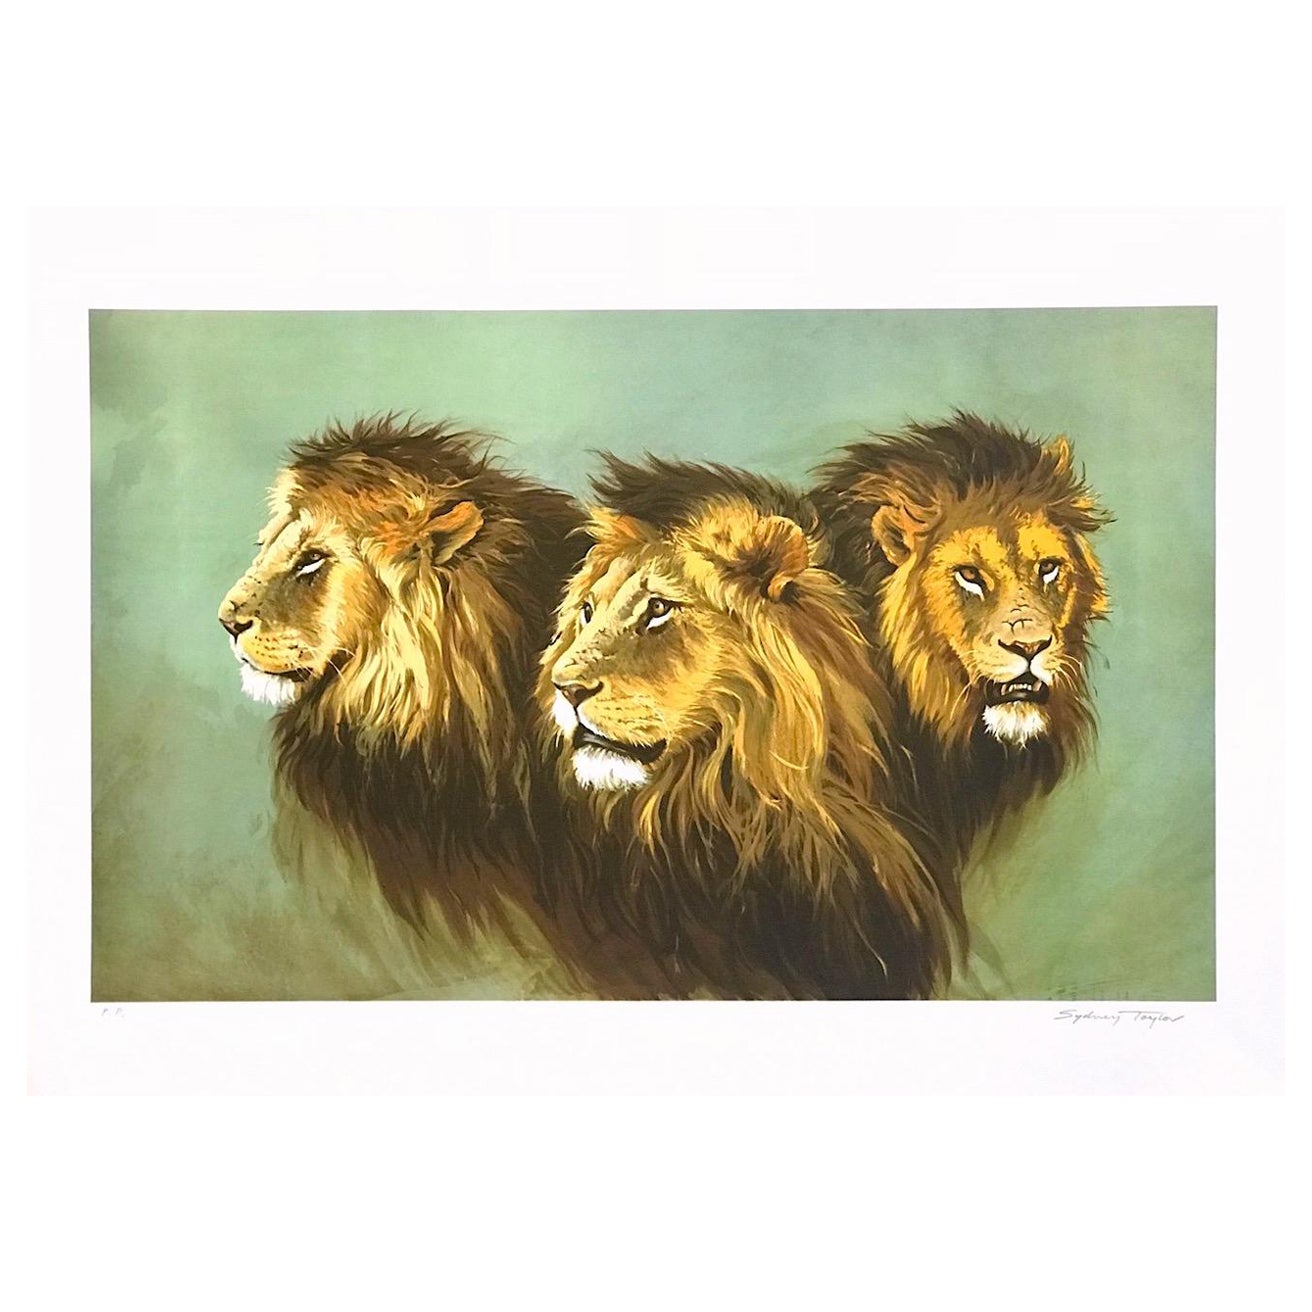 LION PORTRAIT Signierte Lithographie, afrikanische Löwenköpfe, moderne Wildtierkunst – Print von Sydney Taylor